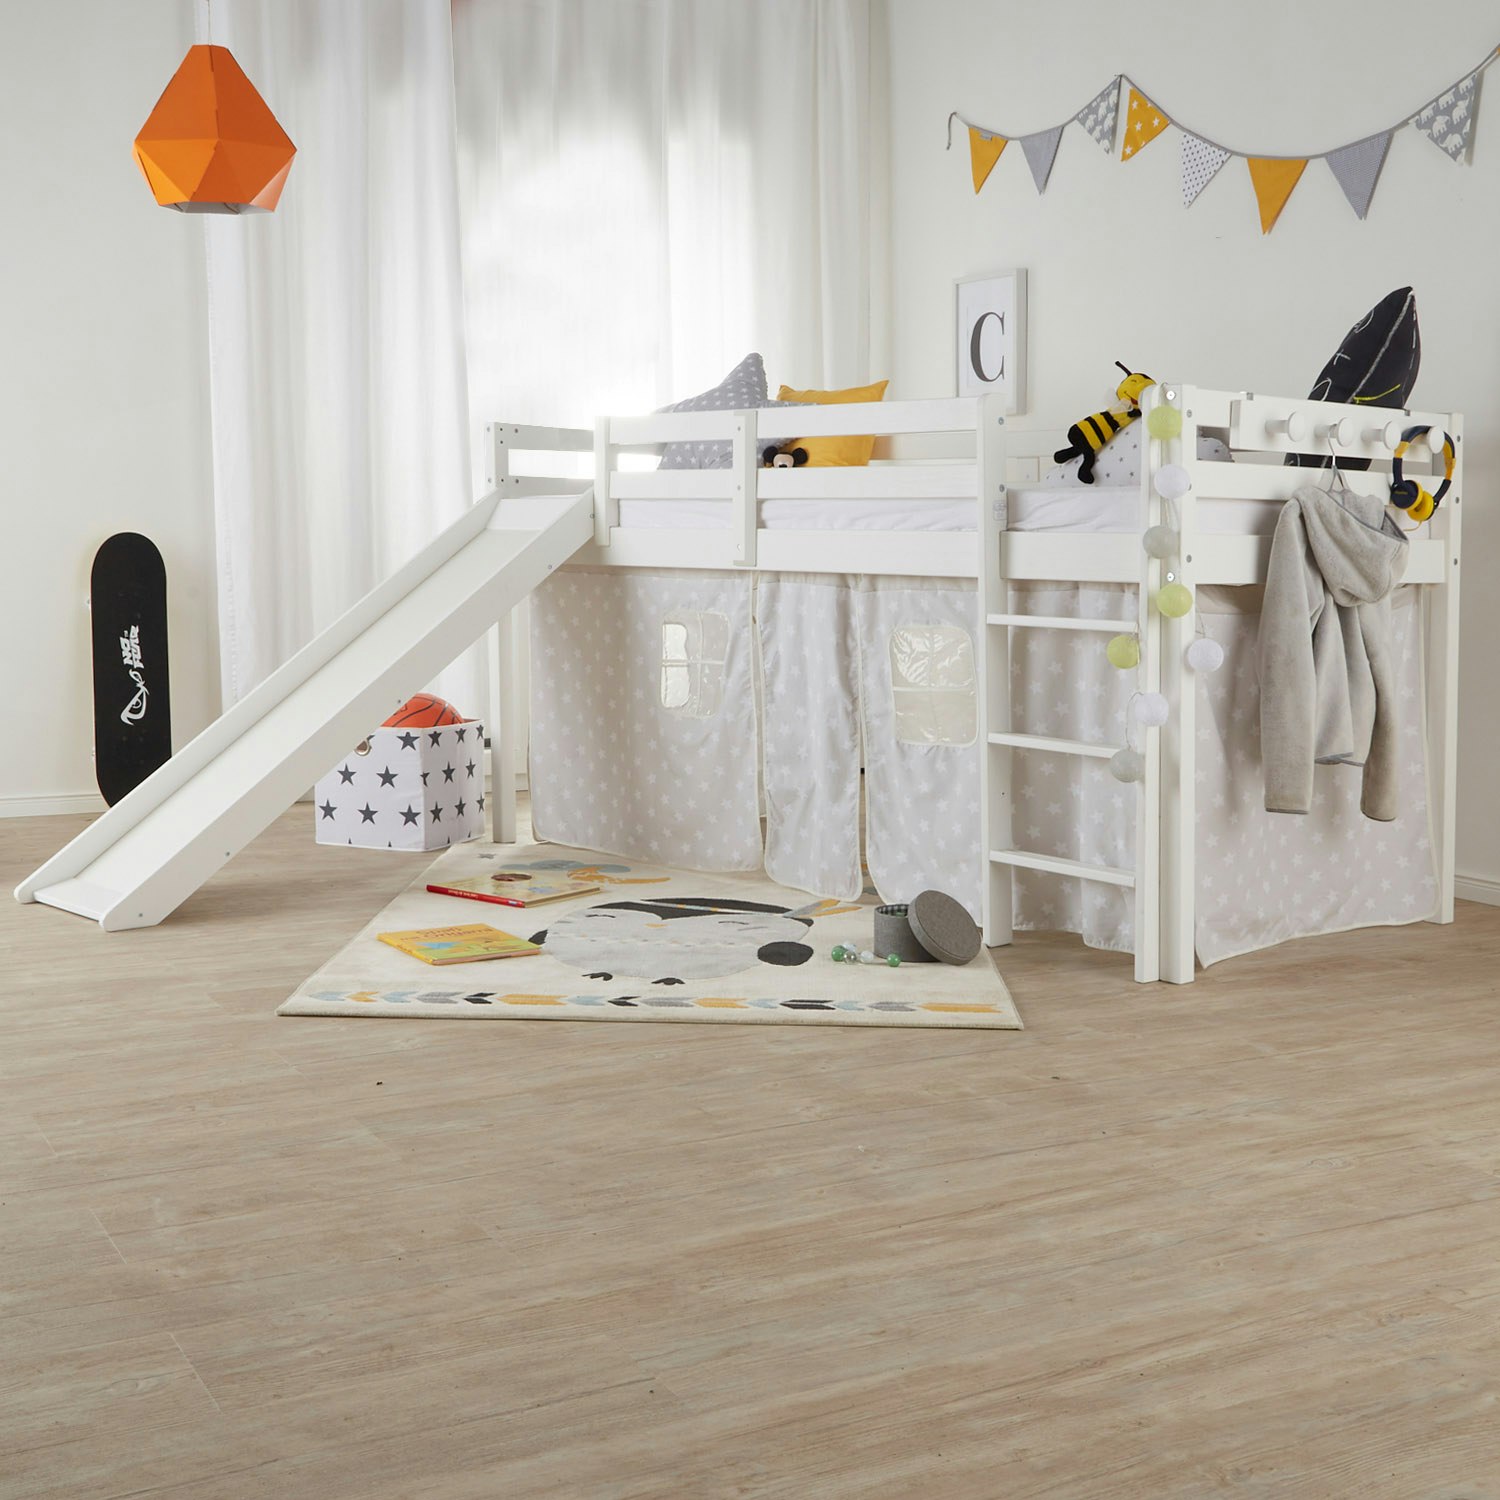 Vit loftsäng med rutschkana till barnrummet, 90x200 cm Vit loftsäng med rutschkana i ett barnrum